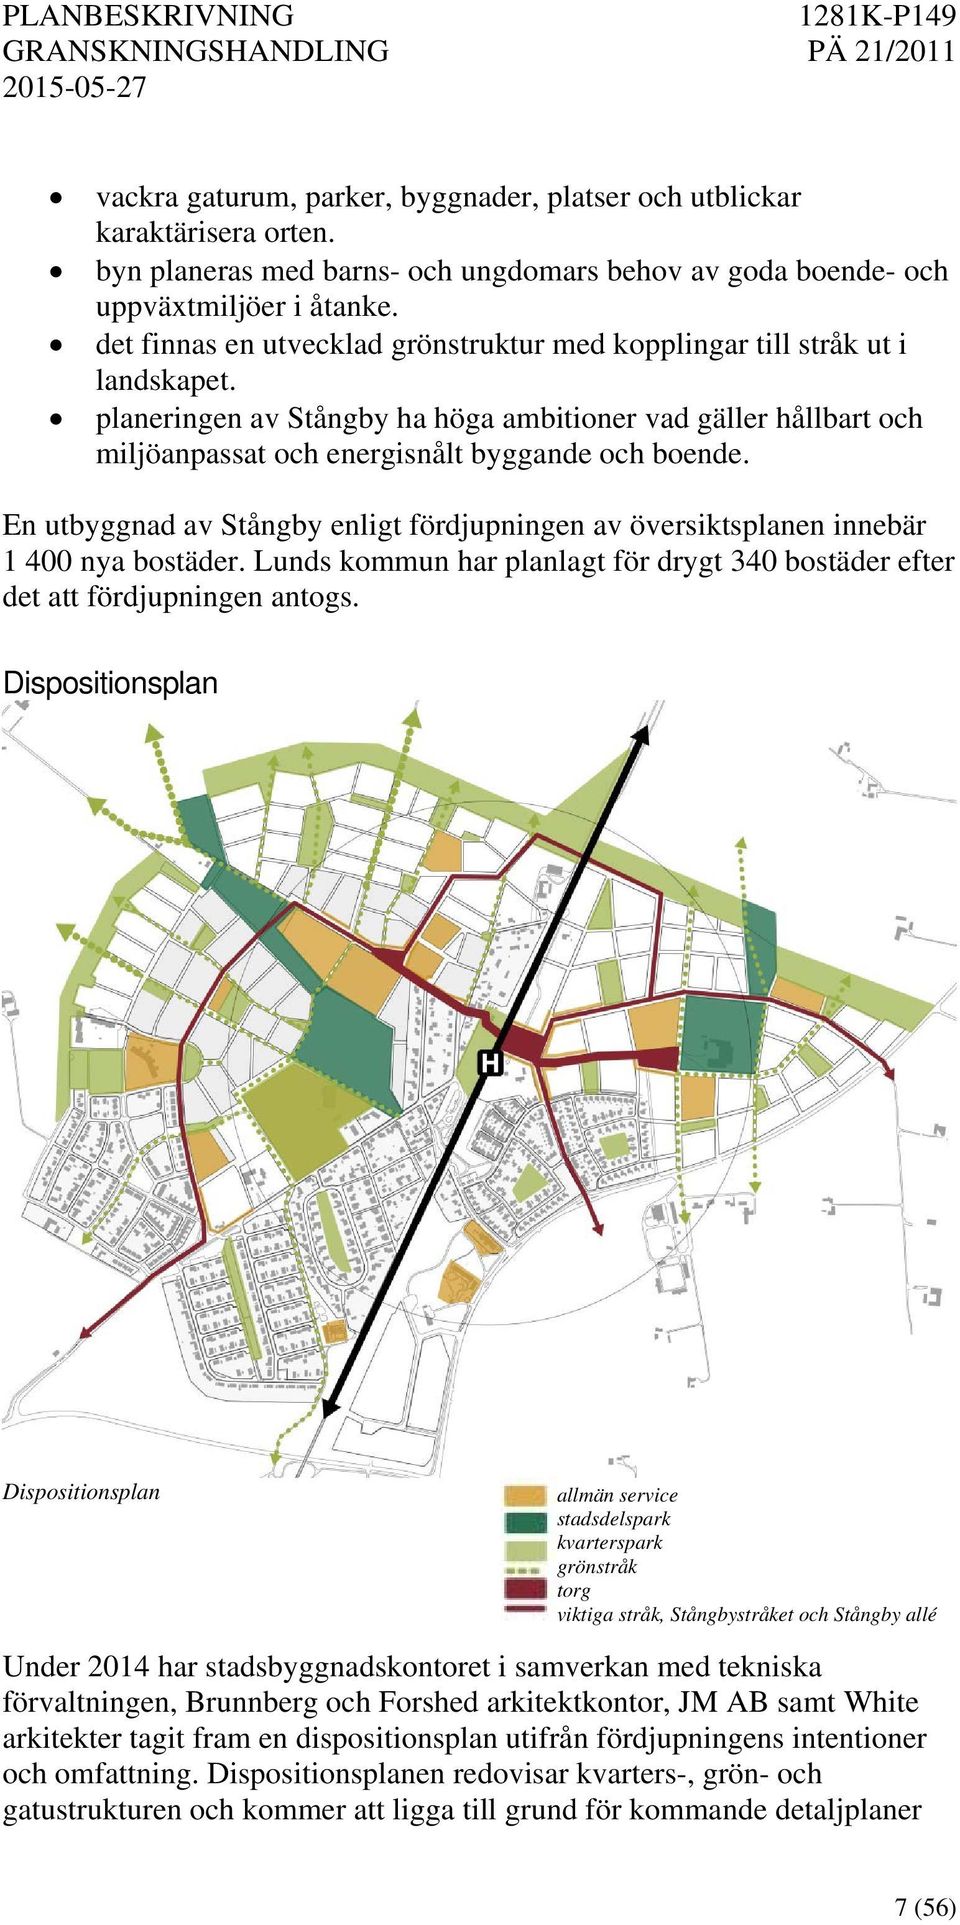 En utbyggnad av Stångby enligt fördjupningen av översiktsplanen innebär 1 400 nya bostäder. Lunds kommun har planlagt för drygt 340 bostäder efter det att fördjupningen antogs.